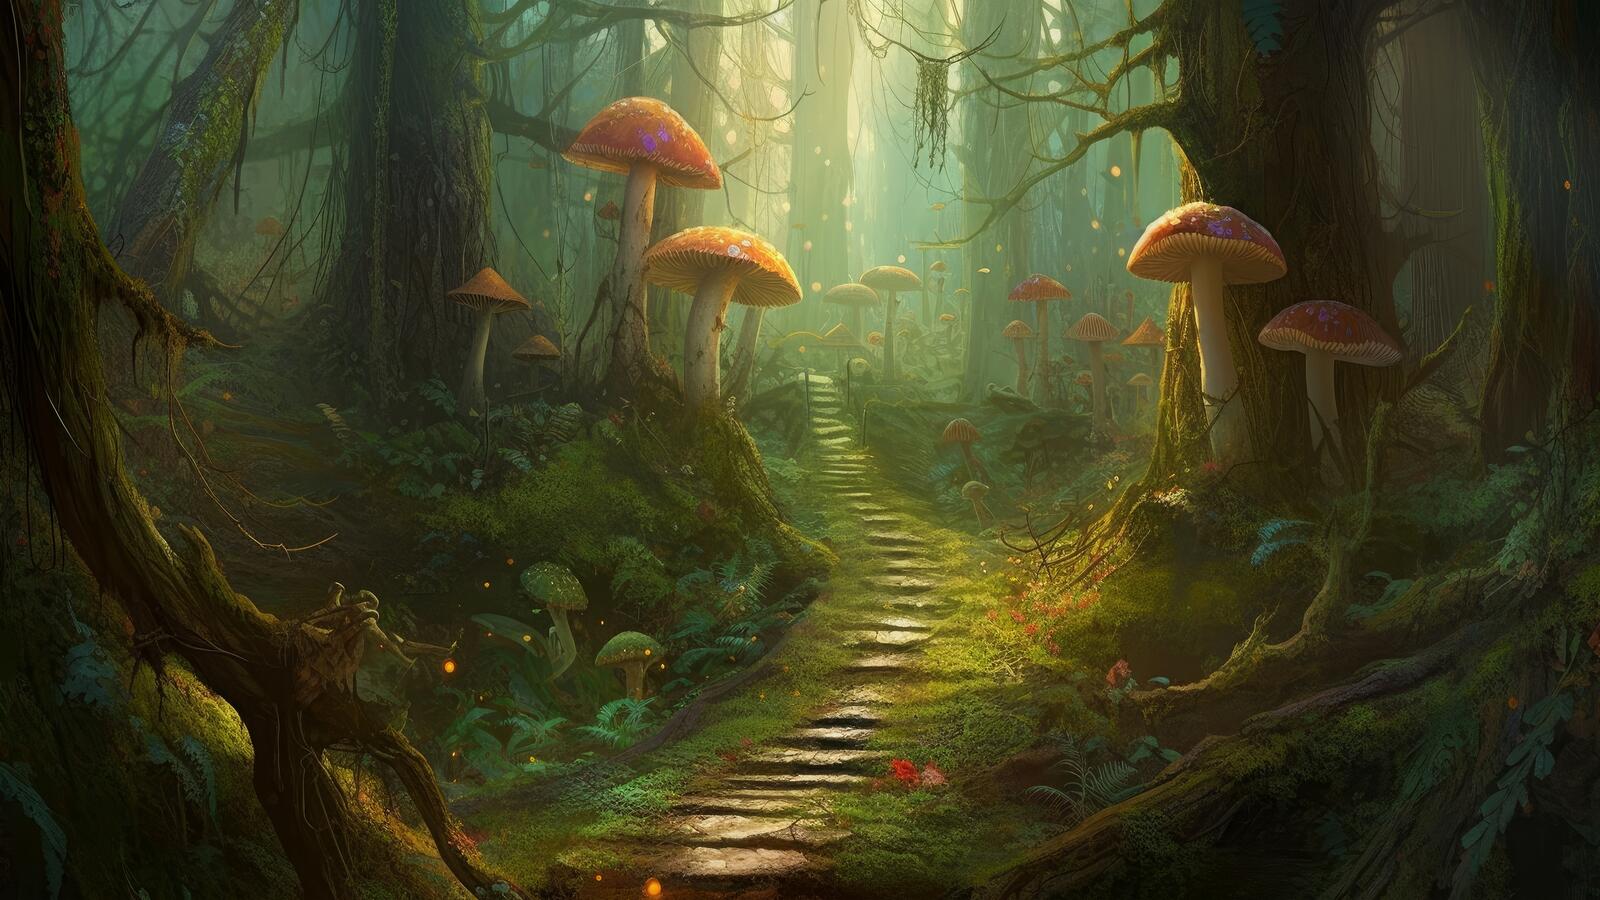 Бесплатное фото Фэнтезийная лесная тропа с большими грибами